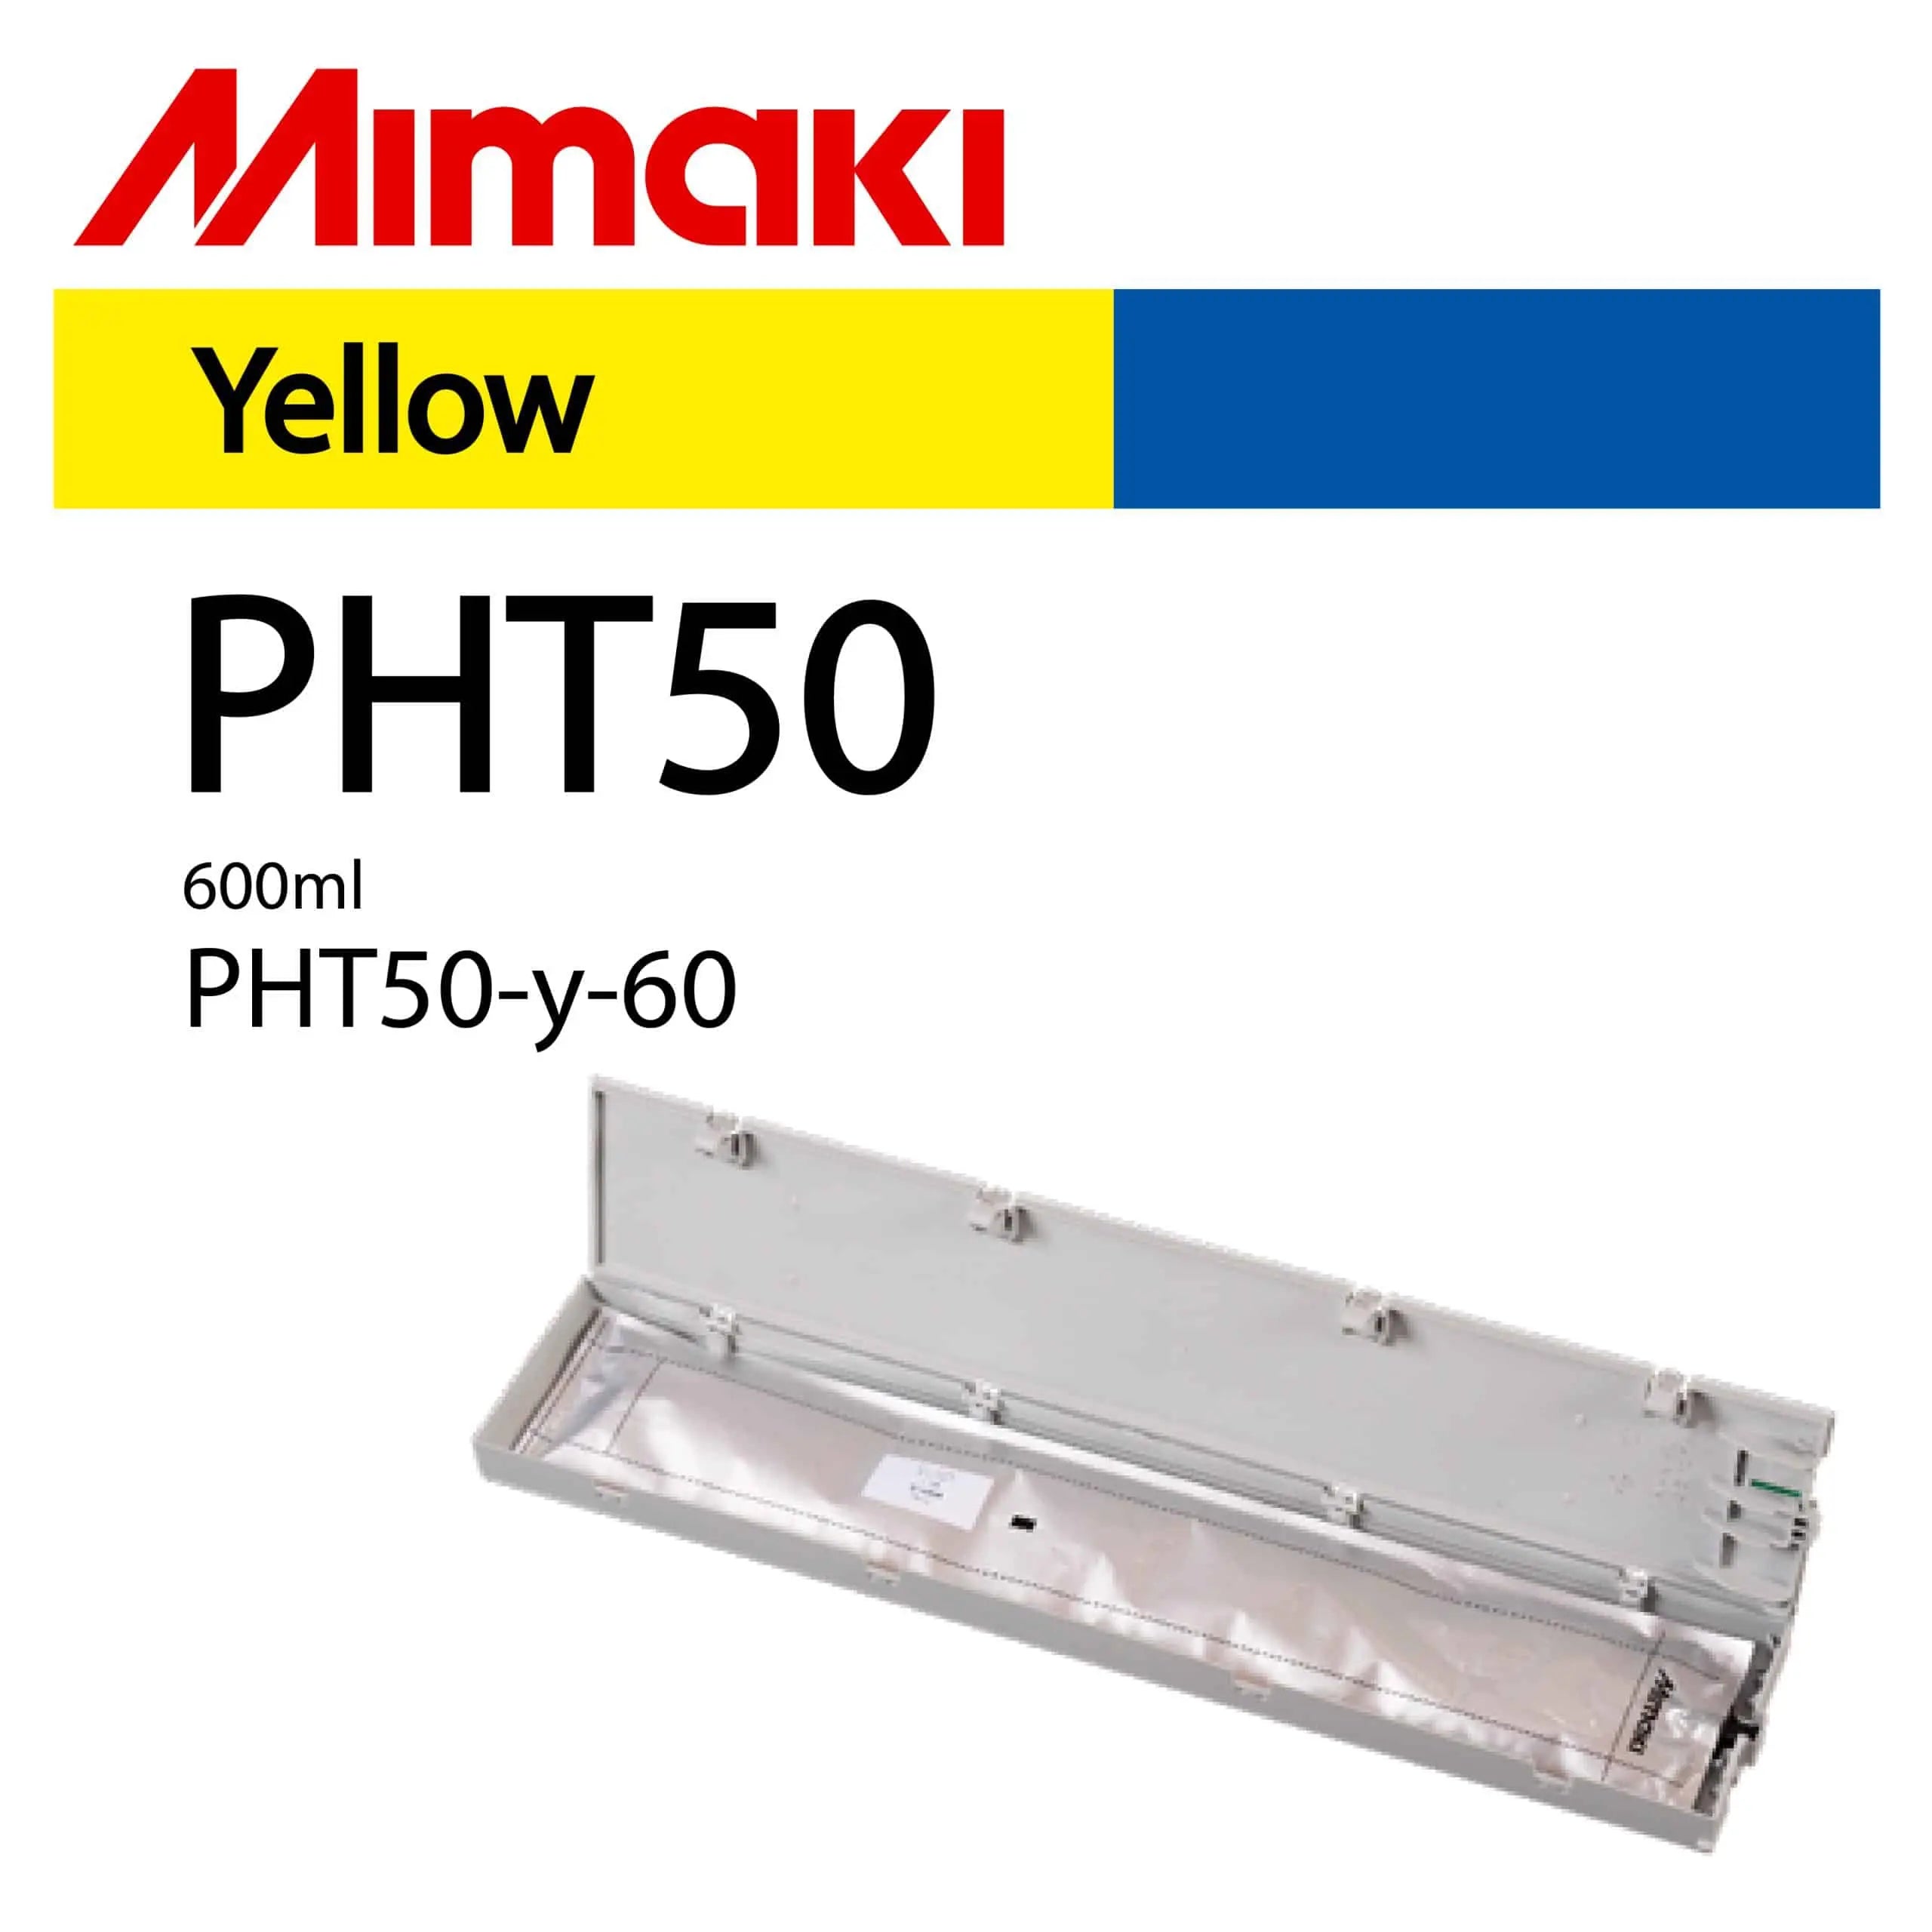 Mimaki PHT50-y-60 Yellow 600ml Ink Cartridge